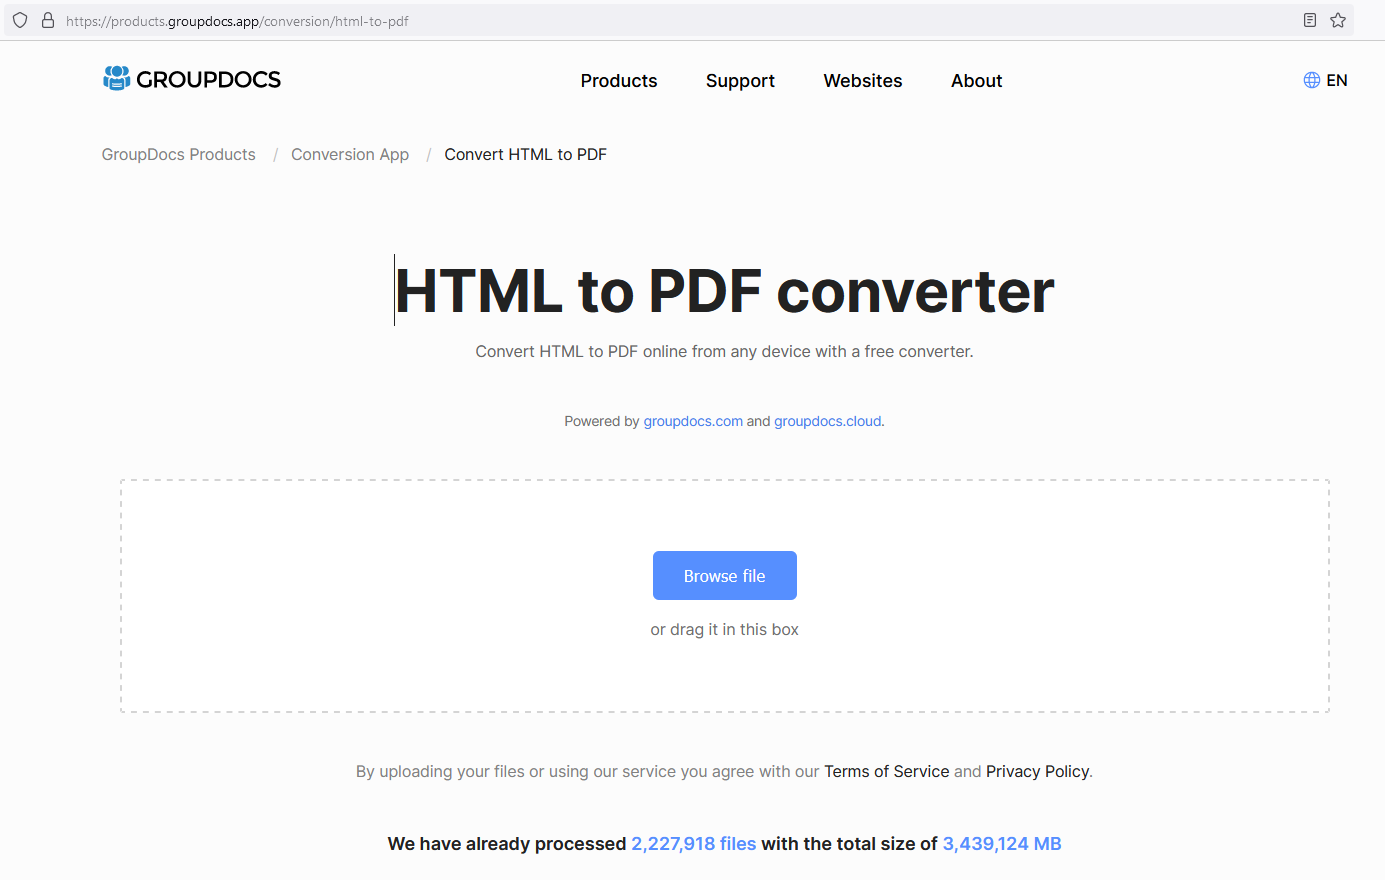 ứng dụng html sang pdf miễn phí